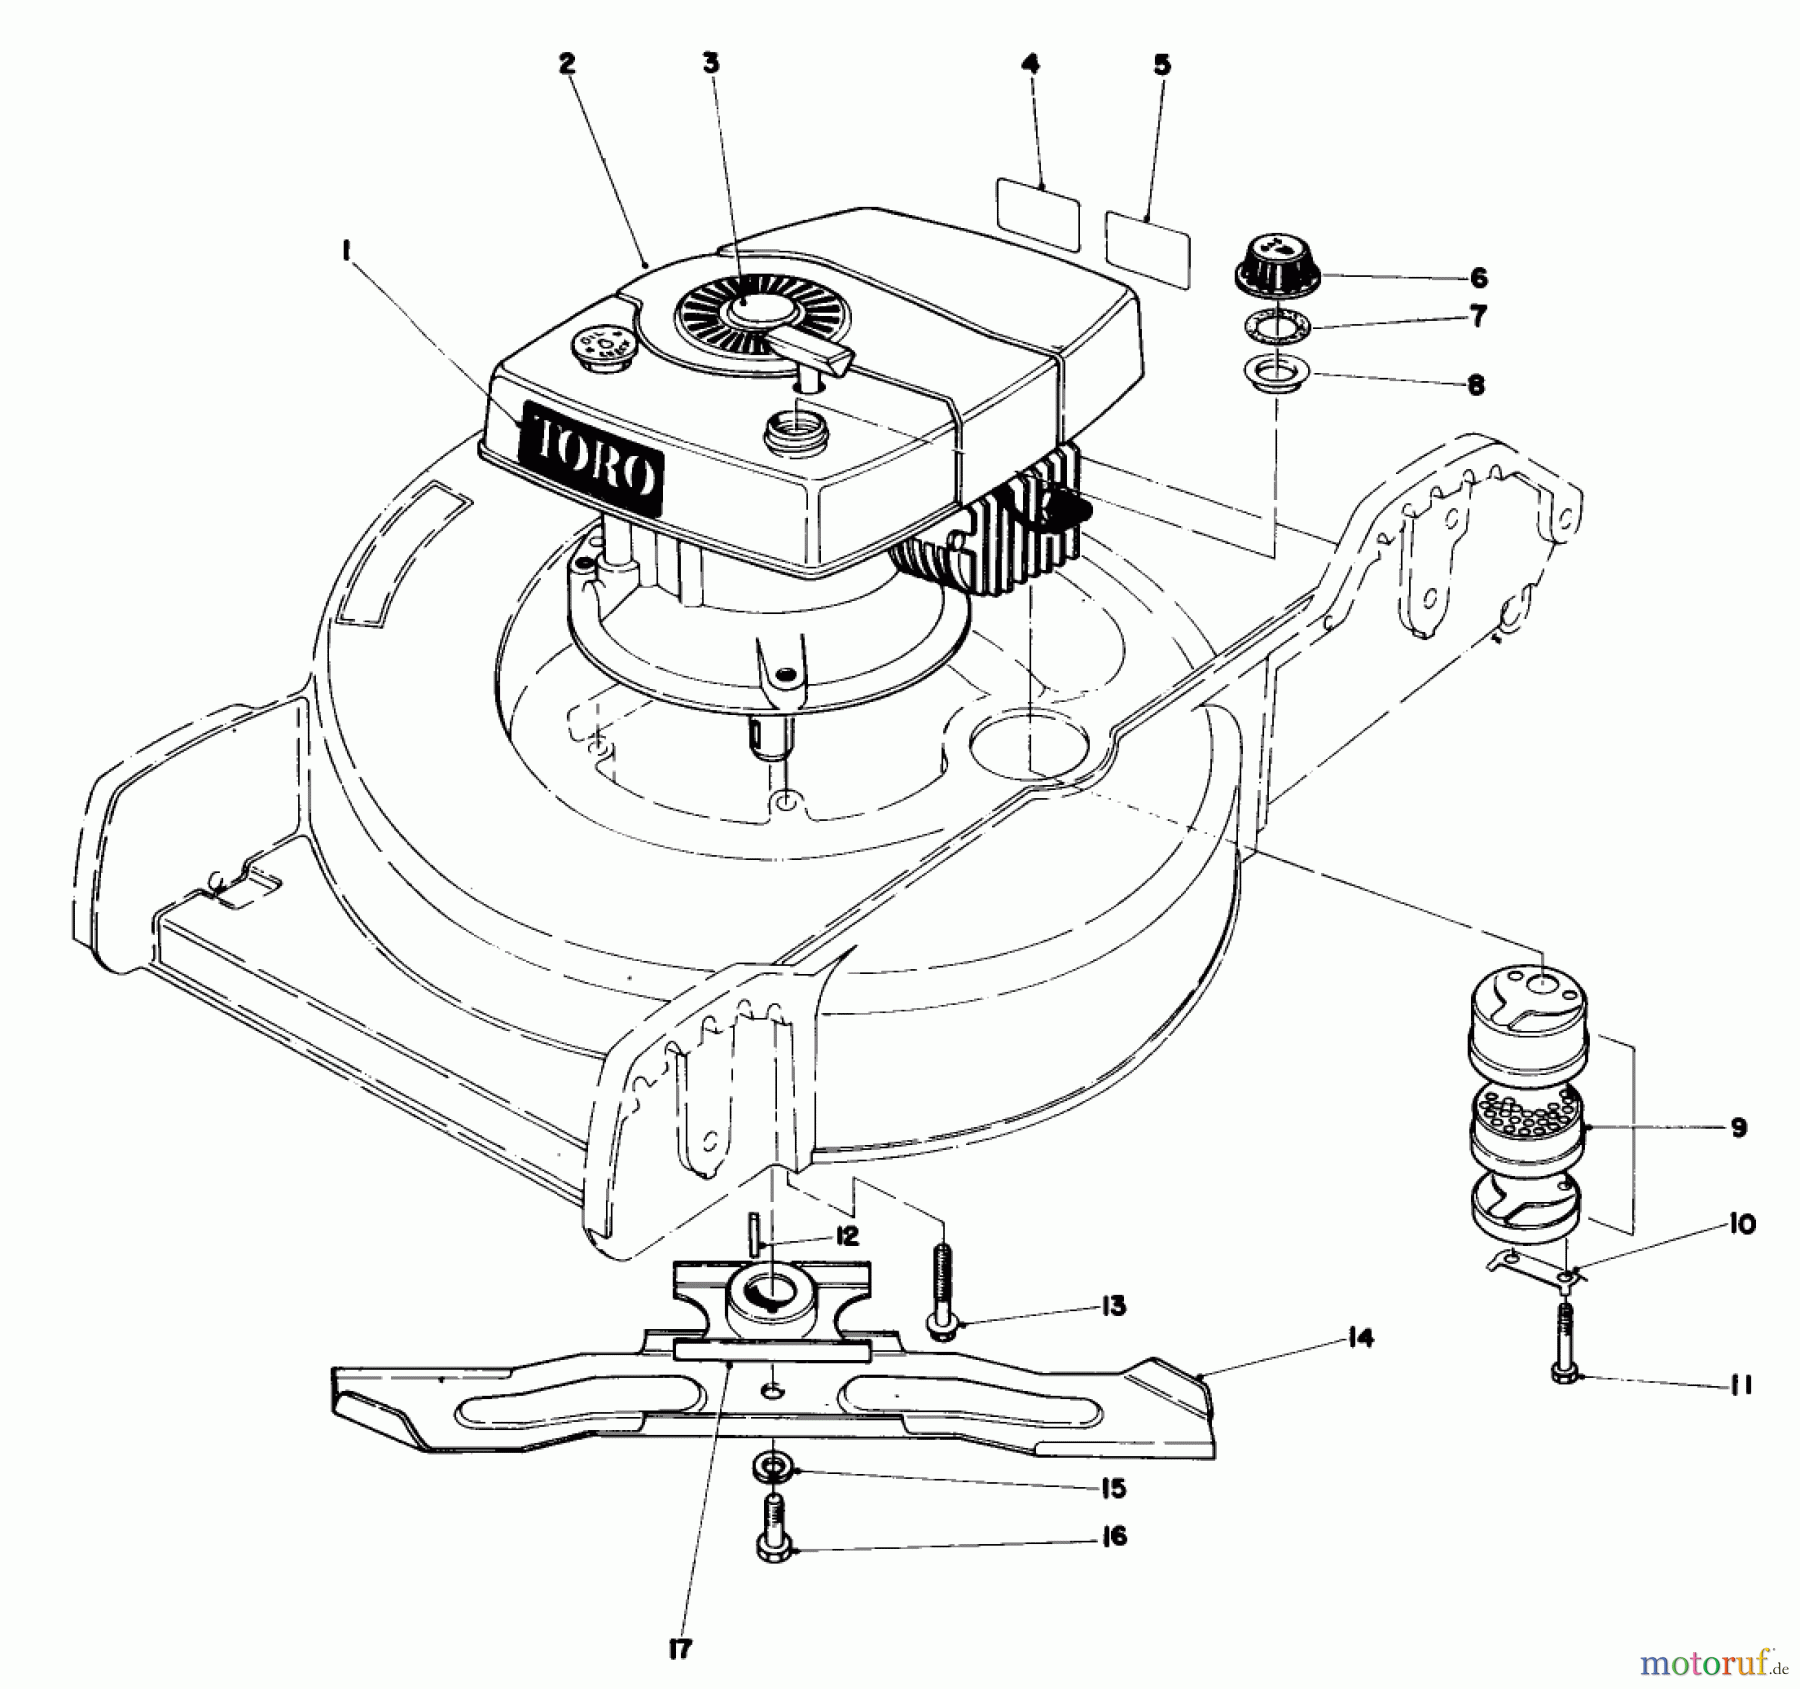  Toro Neu Mowers, Walk-Behind Seite 1 20758 - Toro Lawnmower, 1982 (2000001-2999999) ENGINE ASSEMBLY